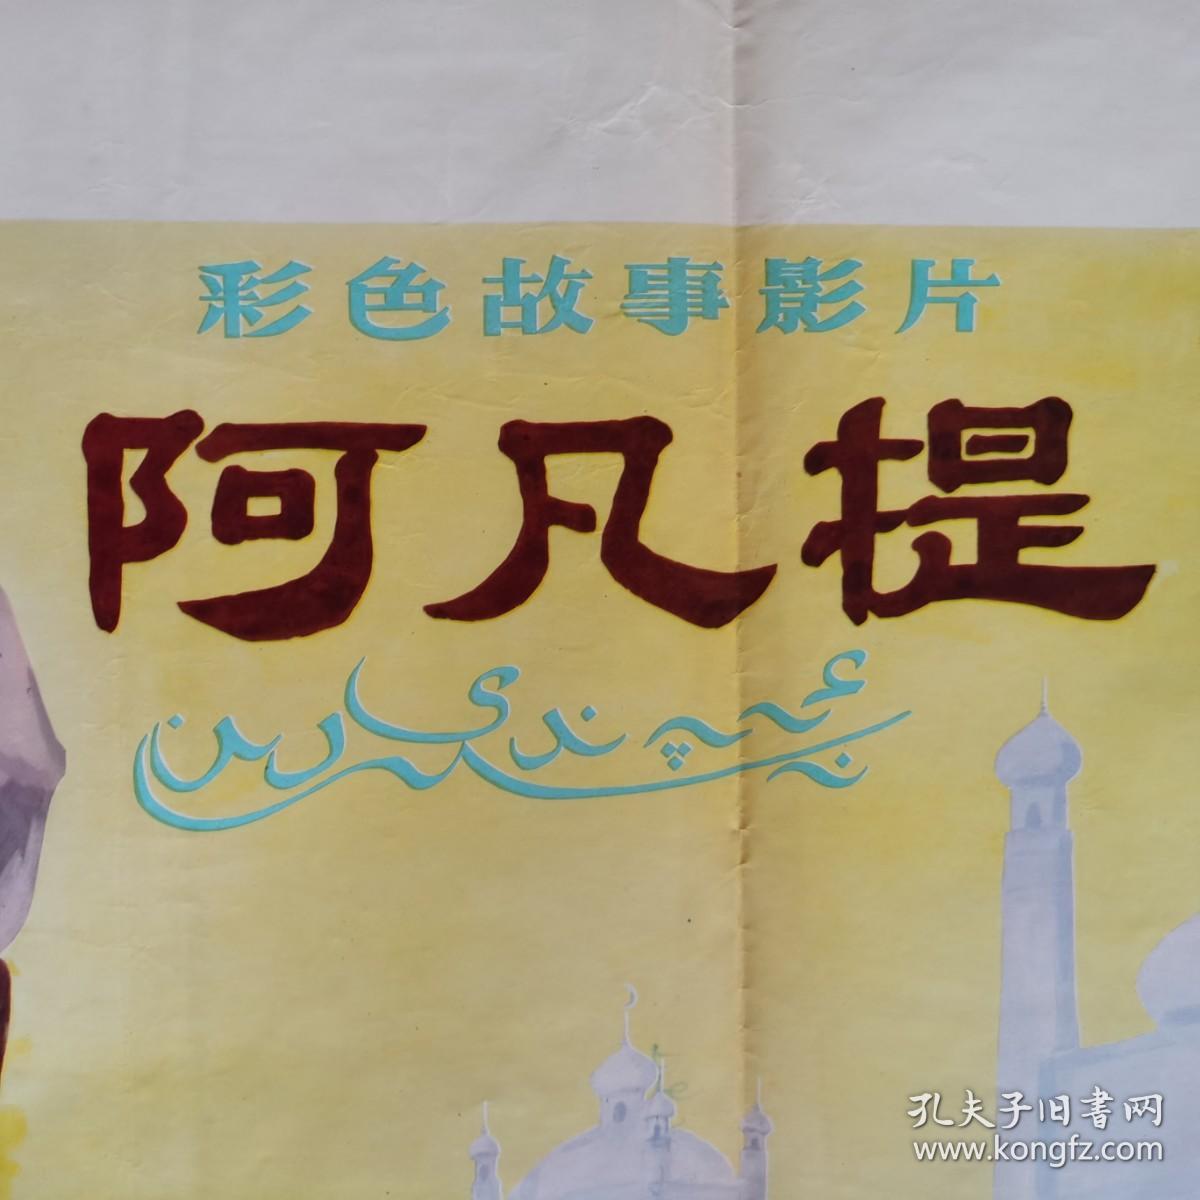 一开电影海报 《阿凡提》中国电影发行放映公司 北京电影制片厂